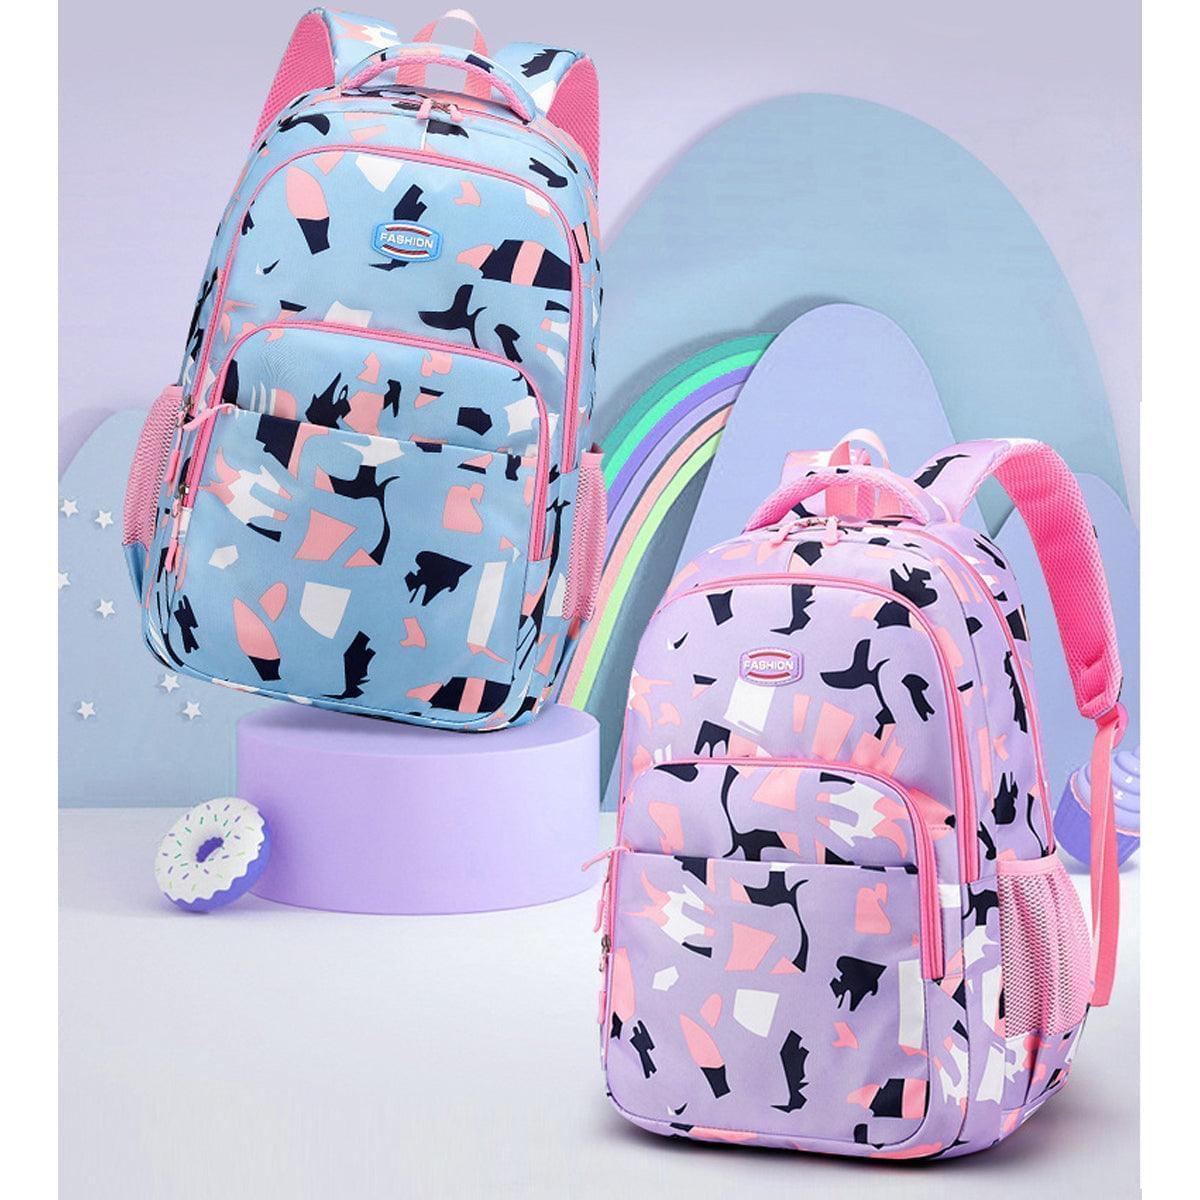 Teenage Girls Backpacks Multiple Pockets Adjustable Shoulder Straps School Backpacks